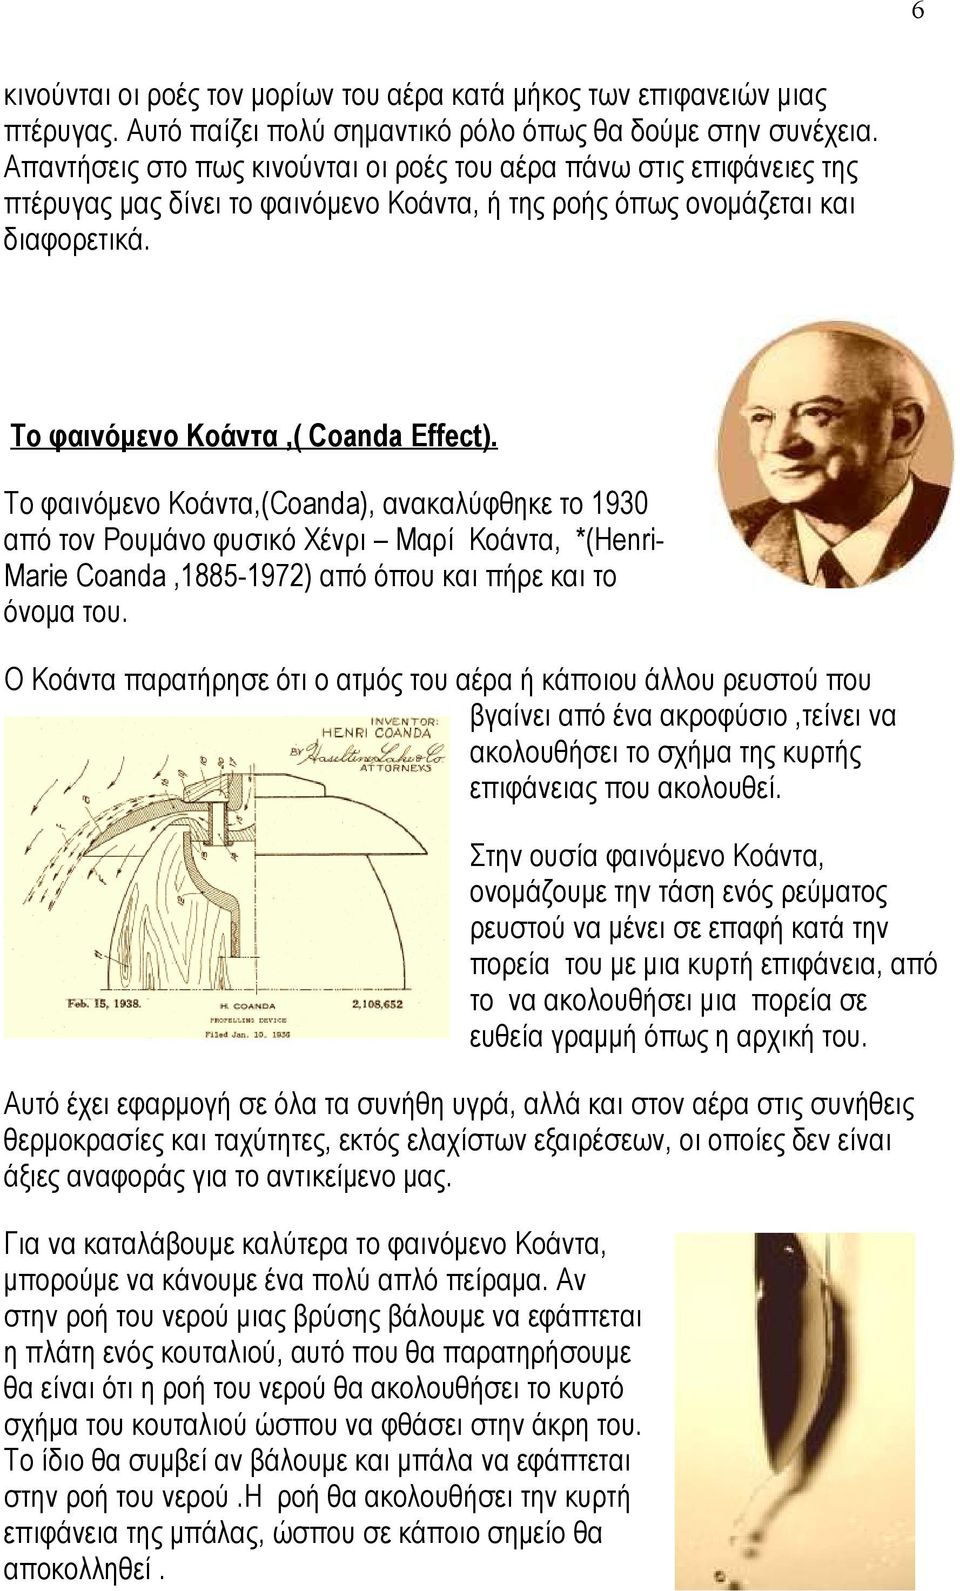 Το φαινόμενο Κοάντα,(Coanda), ανακαλύφθηκε το 1930 από τον Ρουμάνο φυσικό Χένρι Μαρί Κοάντα, *(Henri- Marie Coanda,1885-1972) από όπου και πήρε και το όνομα του.